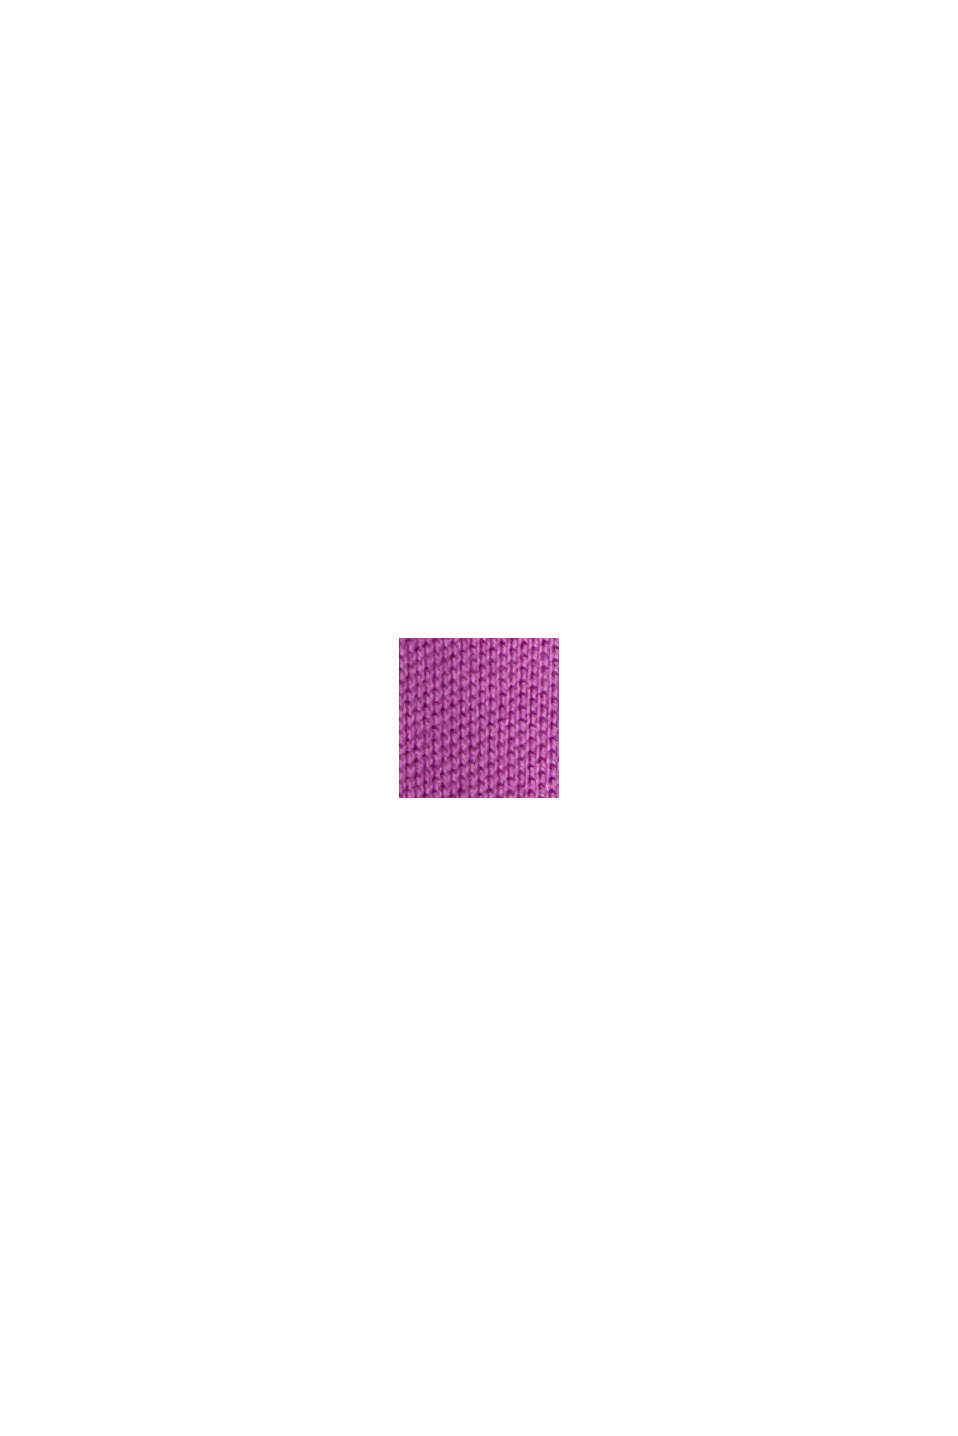 珠地 Polo 衫, 紫色, swatch